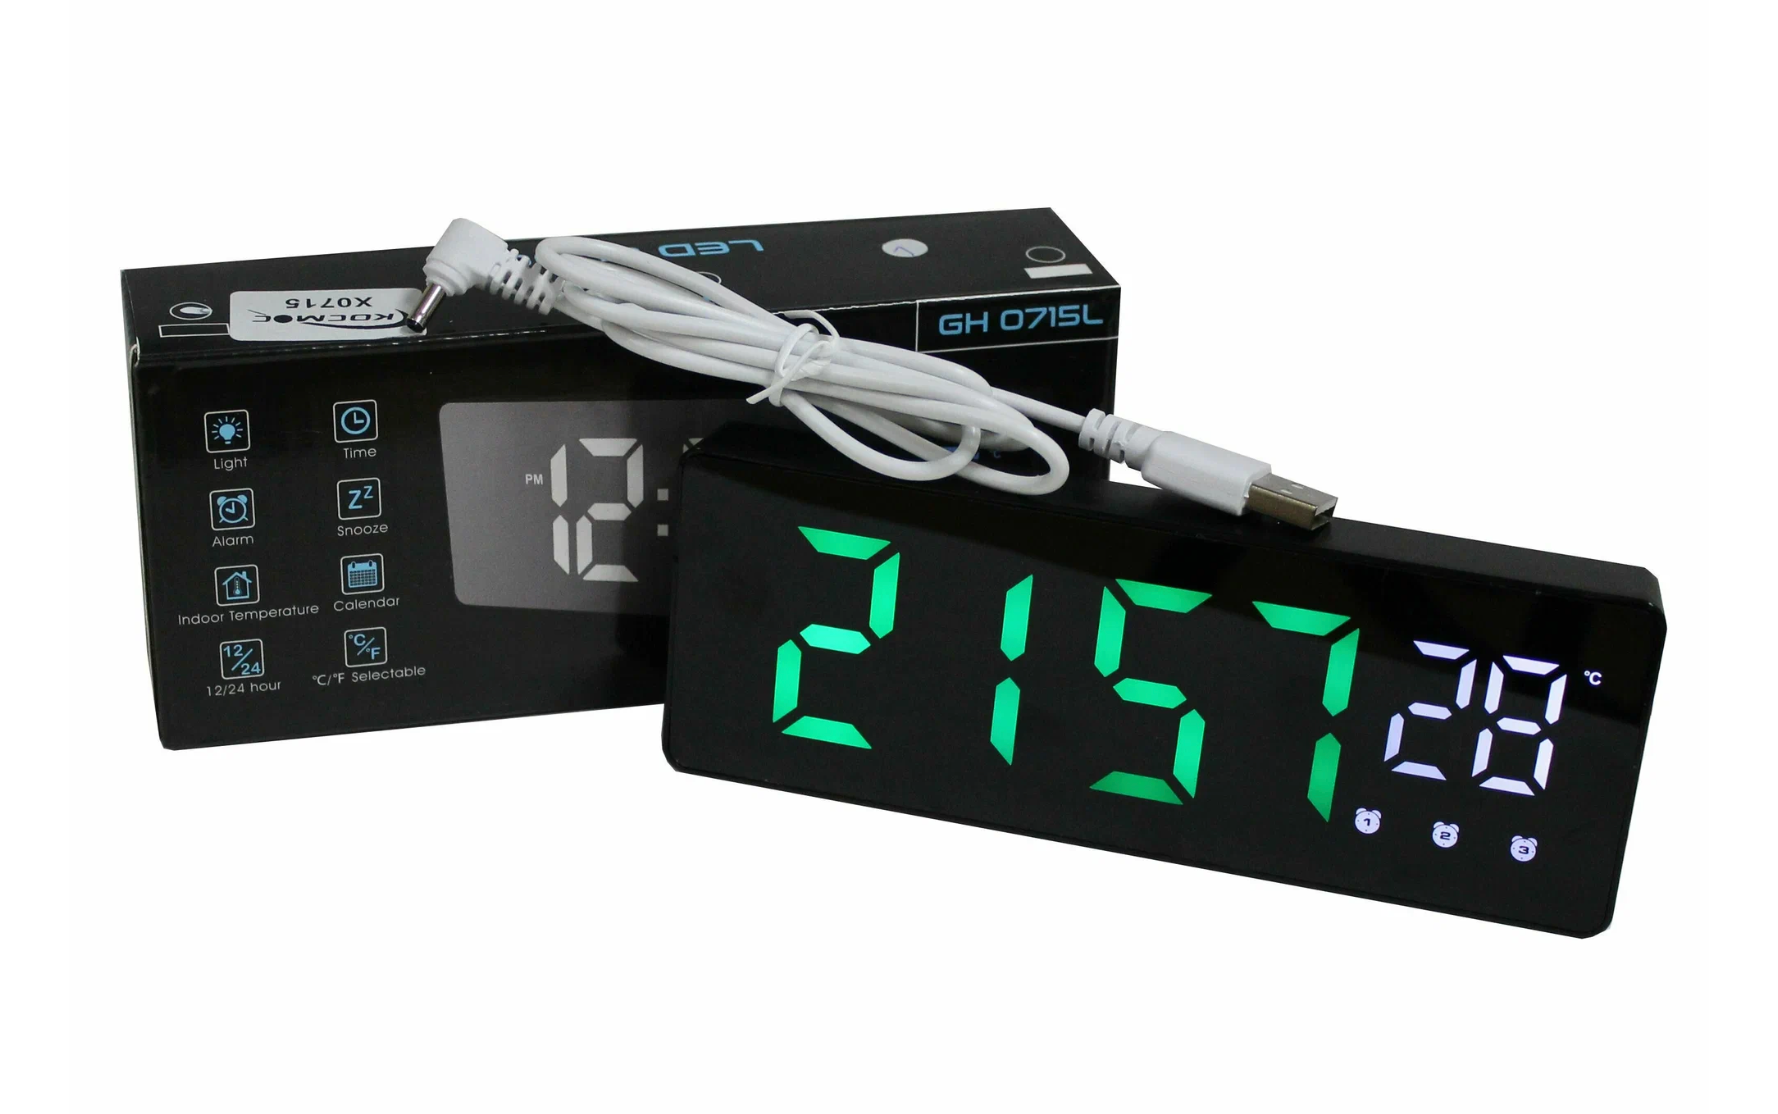 Часы электронные цифровые настольные с будильником, термометром и календарем (Космос X0715) черный корпус Зеленое время, Белая температура